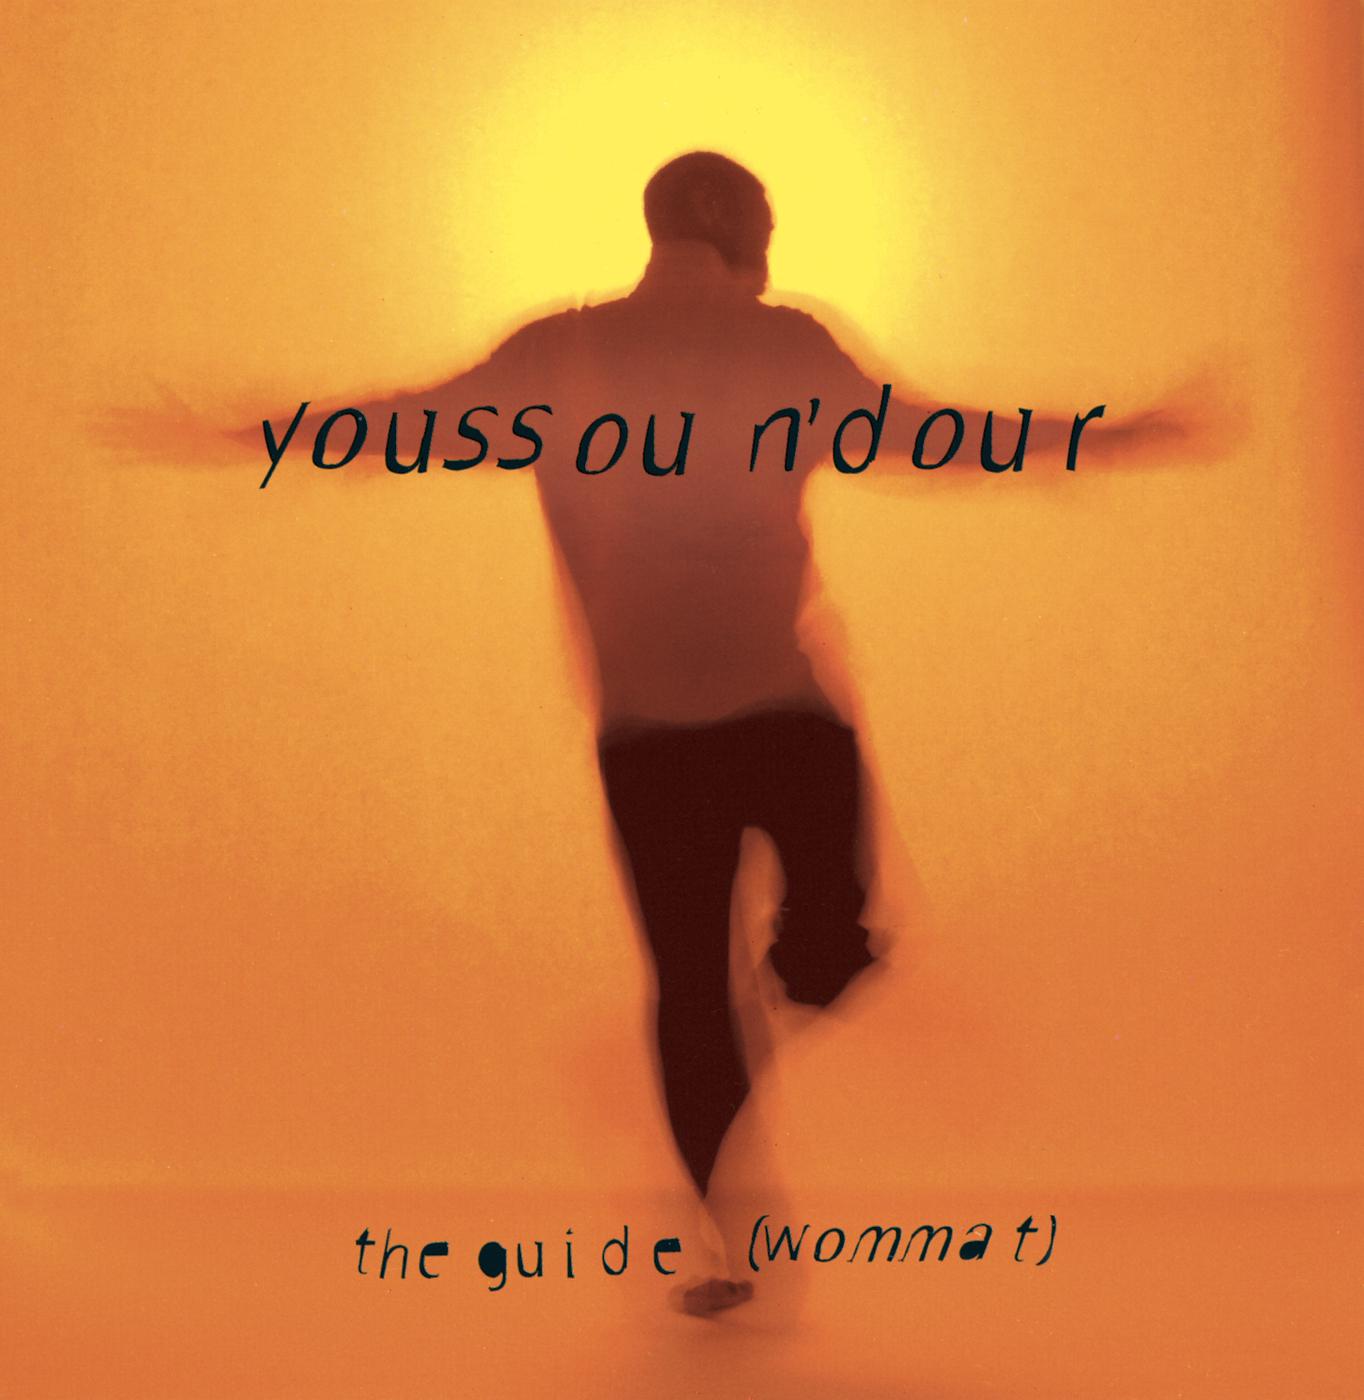 Семь секунд песня слушать. Youssou n'Dour the Guide. Youssou n'Dour the Guide Wommat. Youssou n'Dour album the Guide. Youssou n'Dour - the Guide (Wommat) (1994).